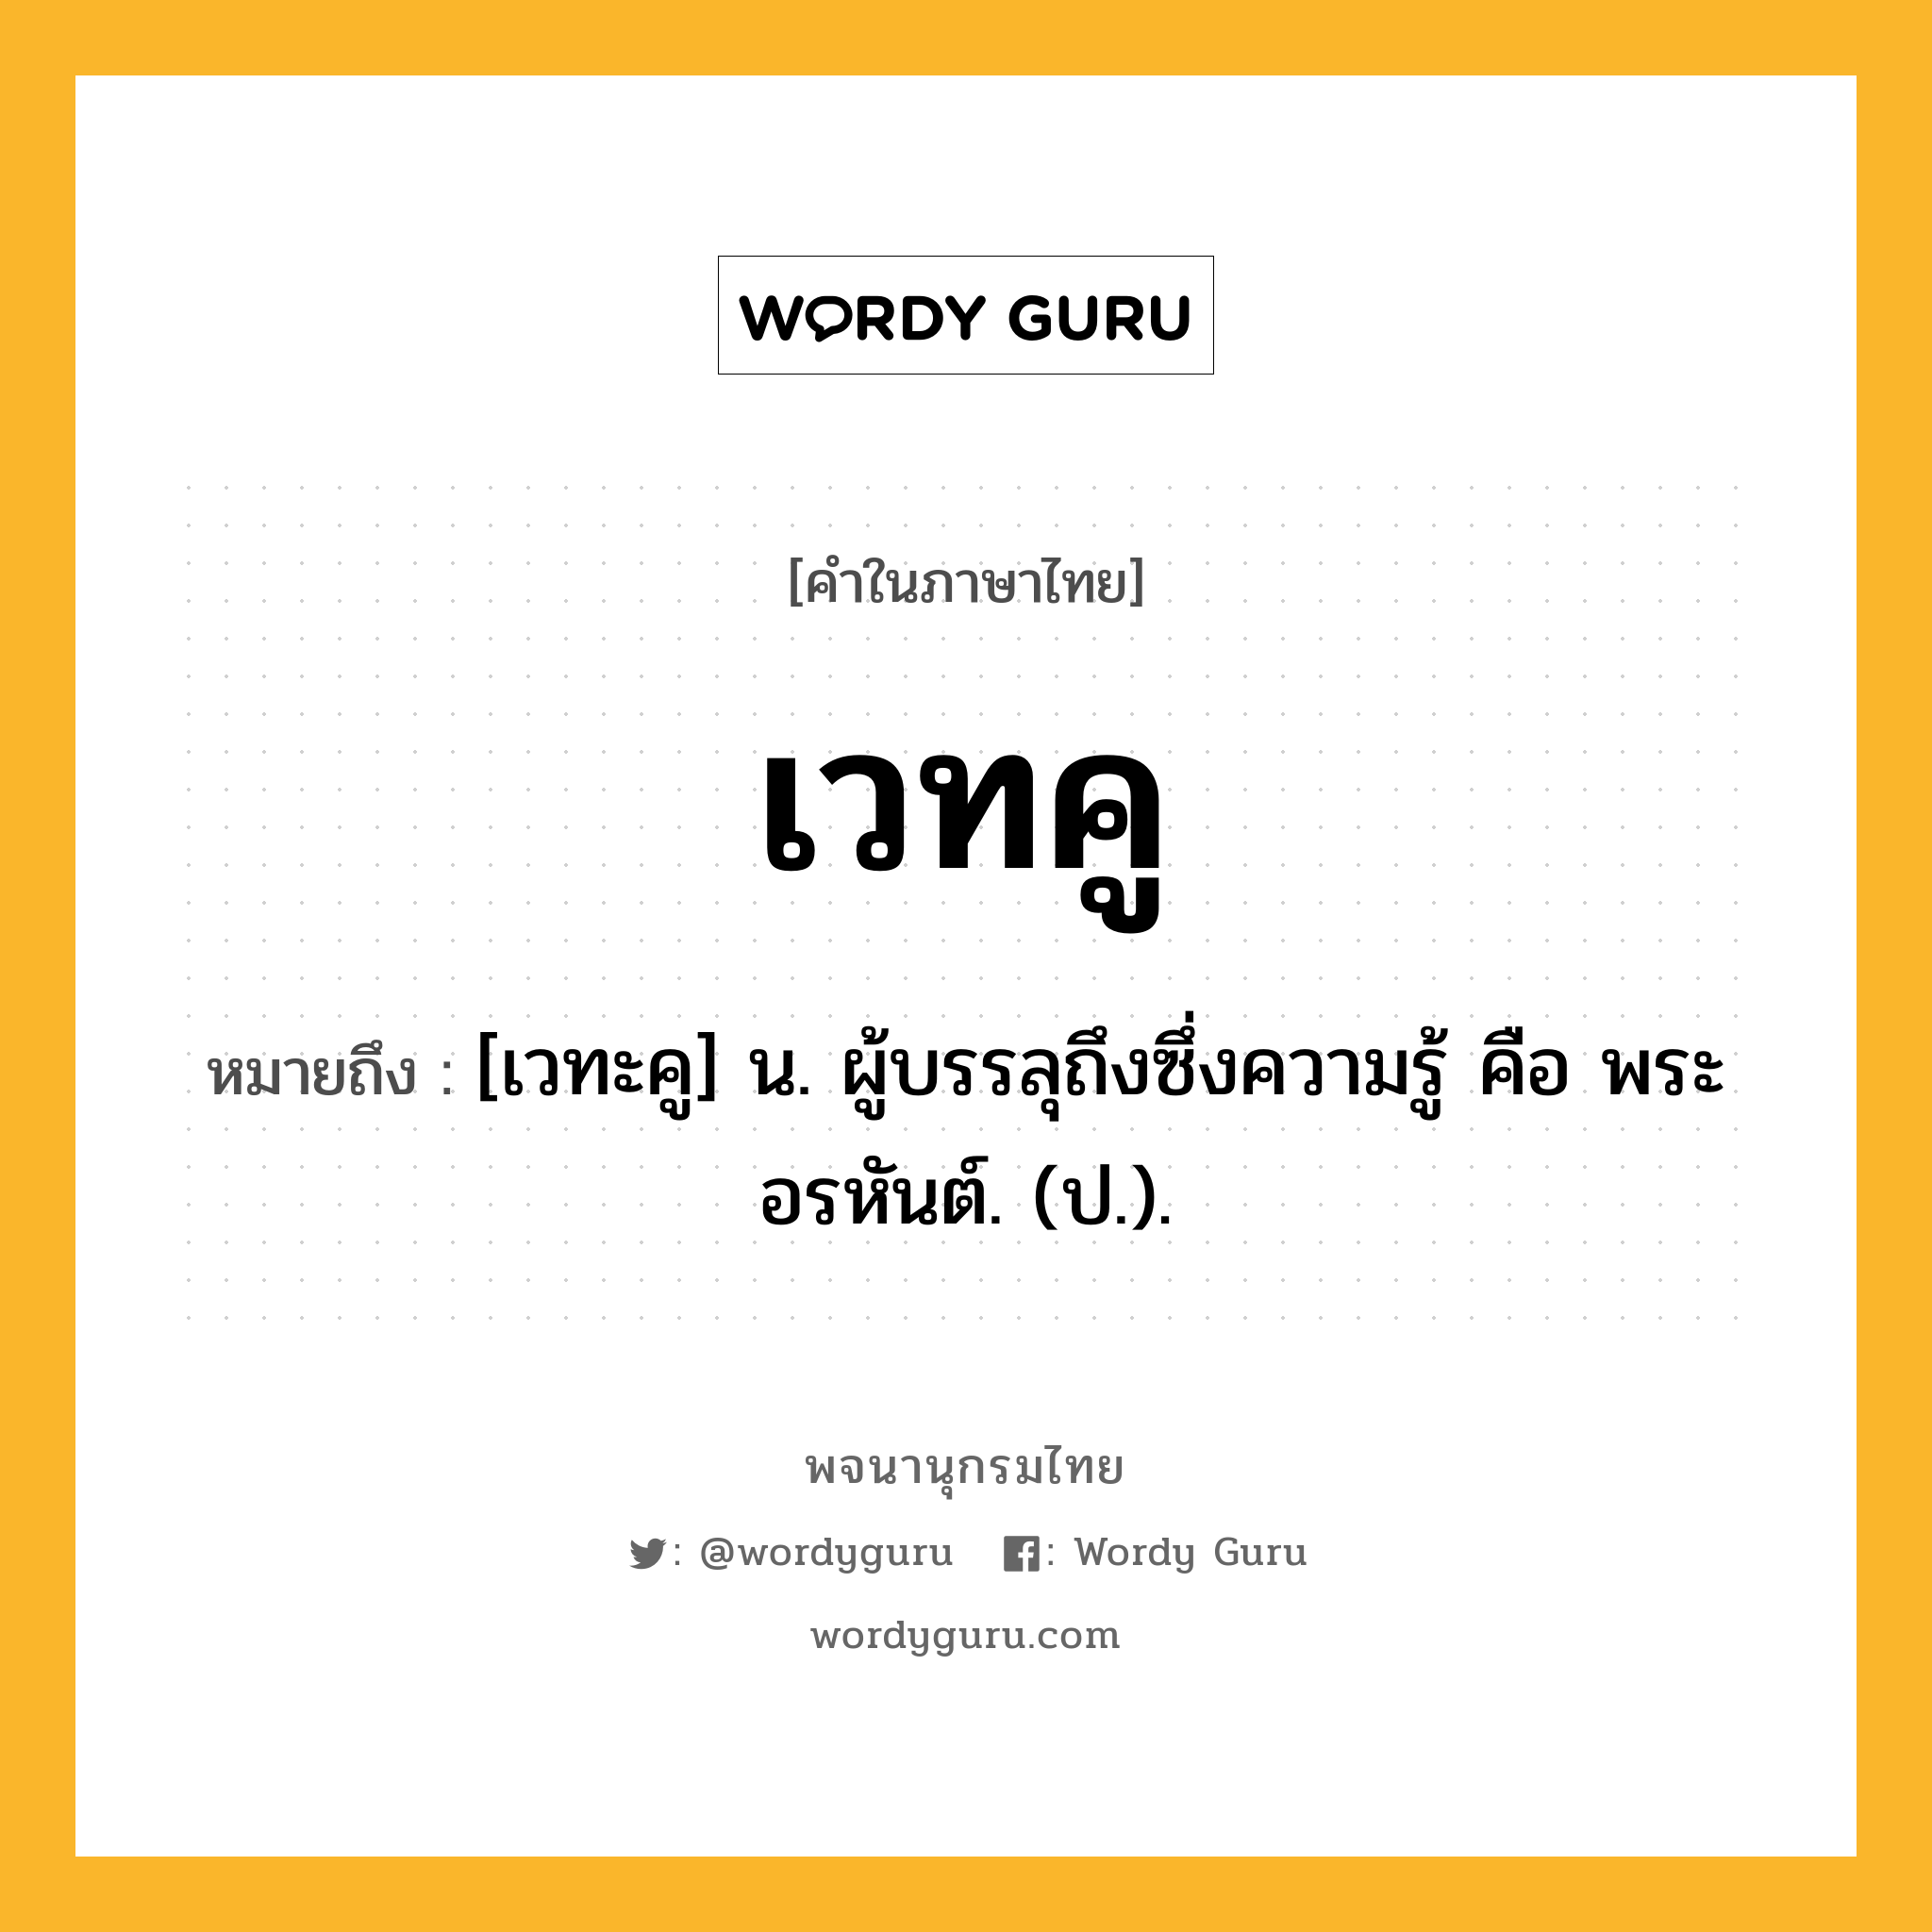 เวทคู หมายถึงอะไร?, คำในภาษาไทย เวทคู หมายถึง [เวทะคู] น. ผู้บรรลุถึงซึ่งความรู้ คือ พระอรหันต์. (ป.).